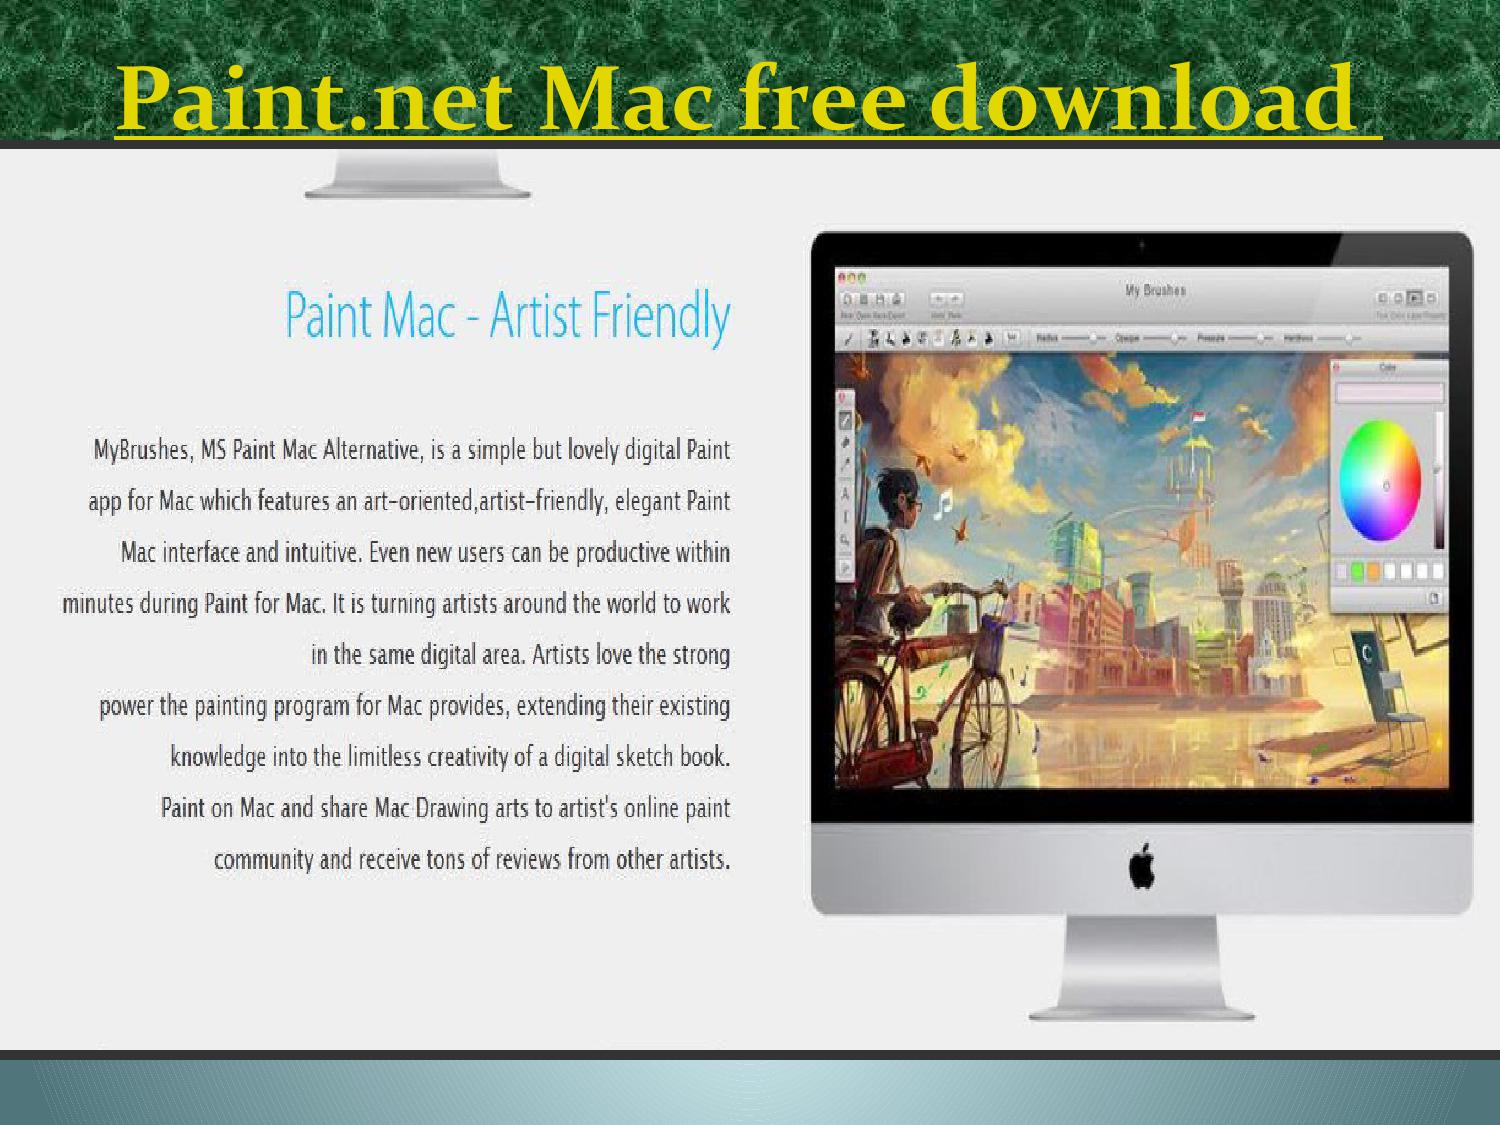 paint.net mac